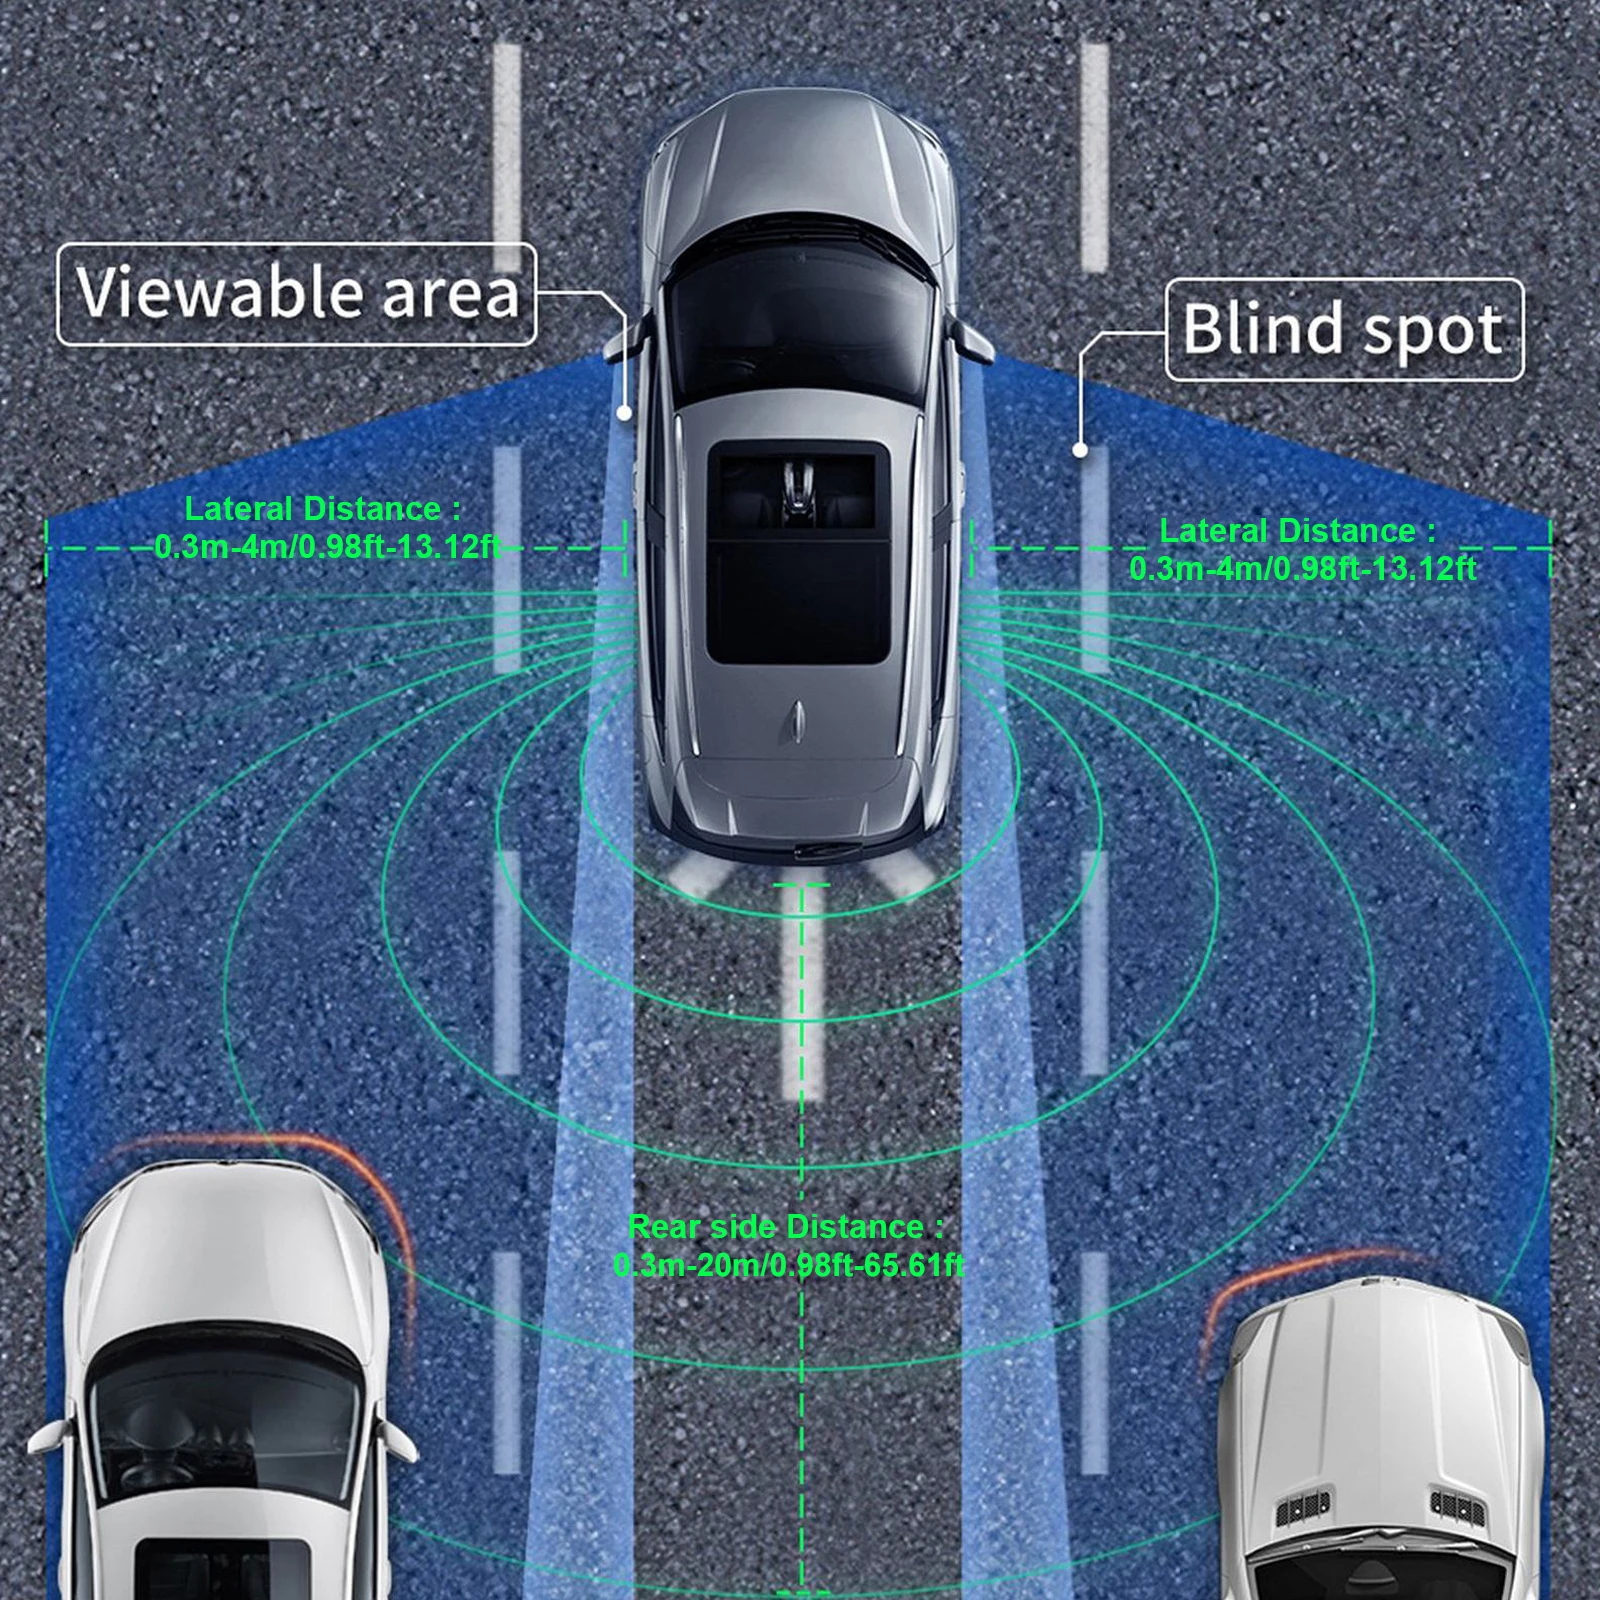 

24Ghz Millimeter Wave Universal Radar BSD Blind Spot Detection System Horizontal 65.61ft Vertical 13.12ft Change Lane Safer